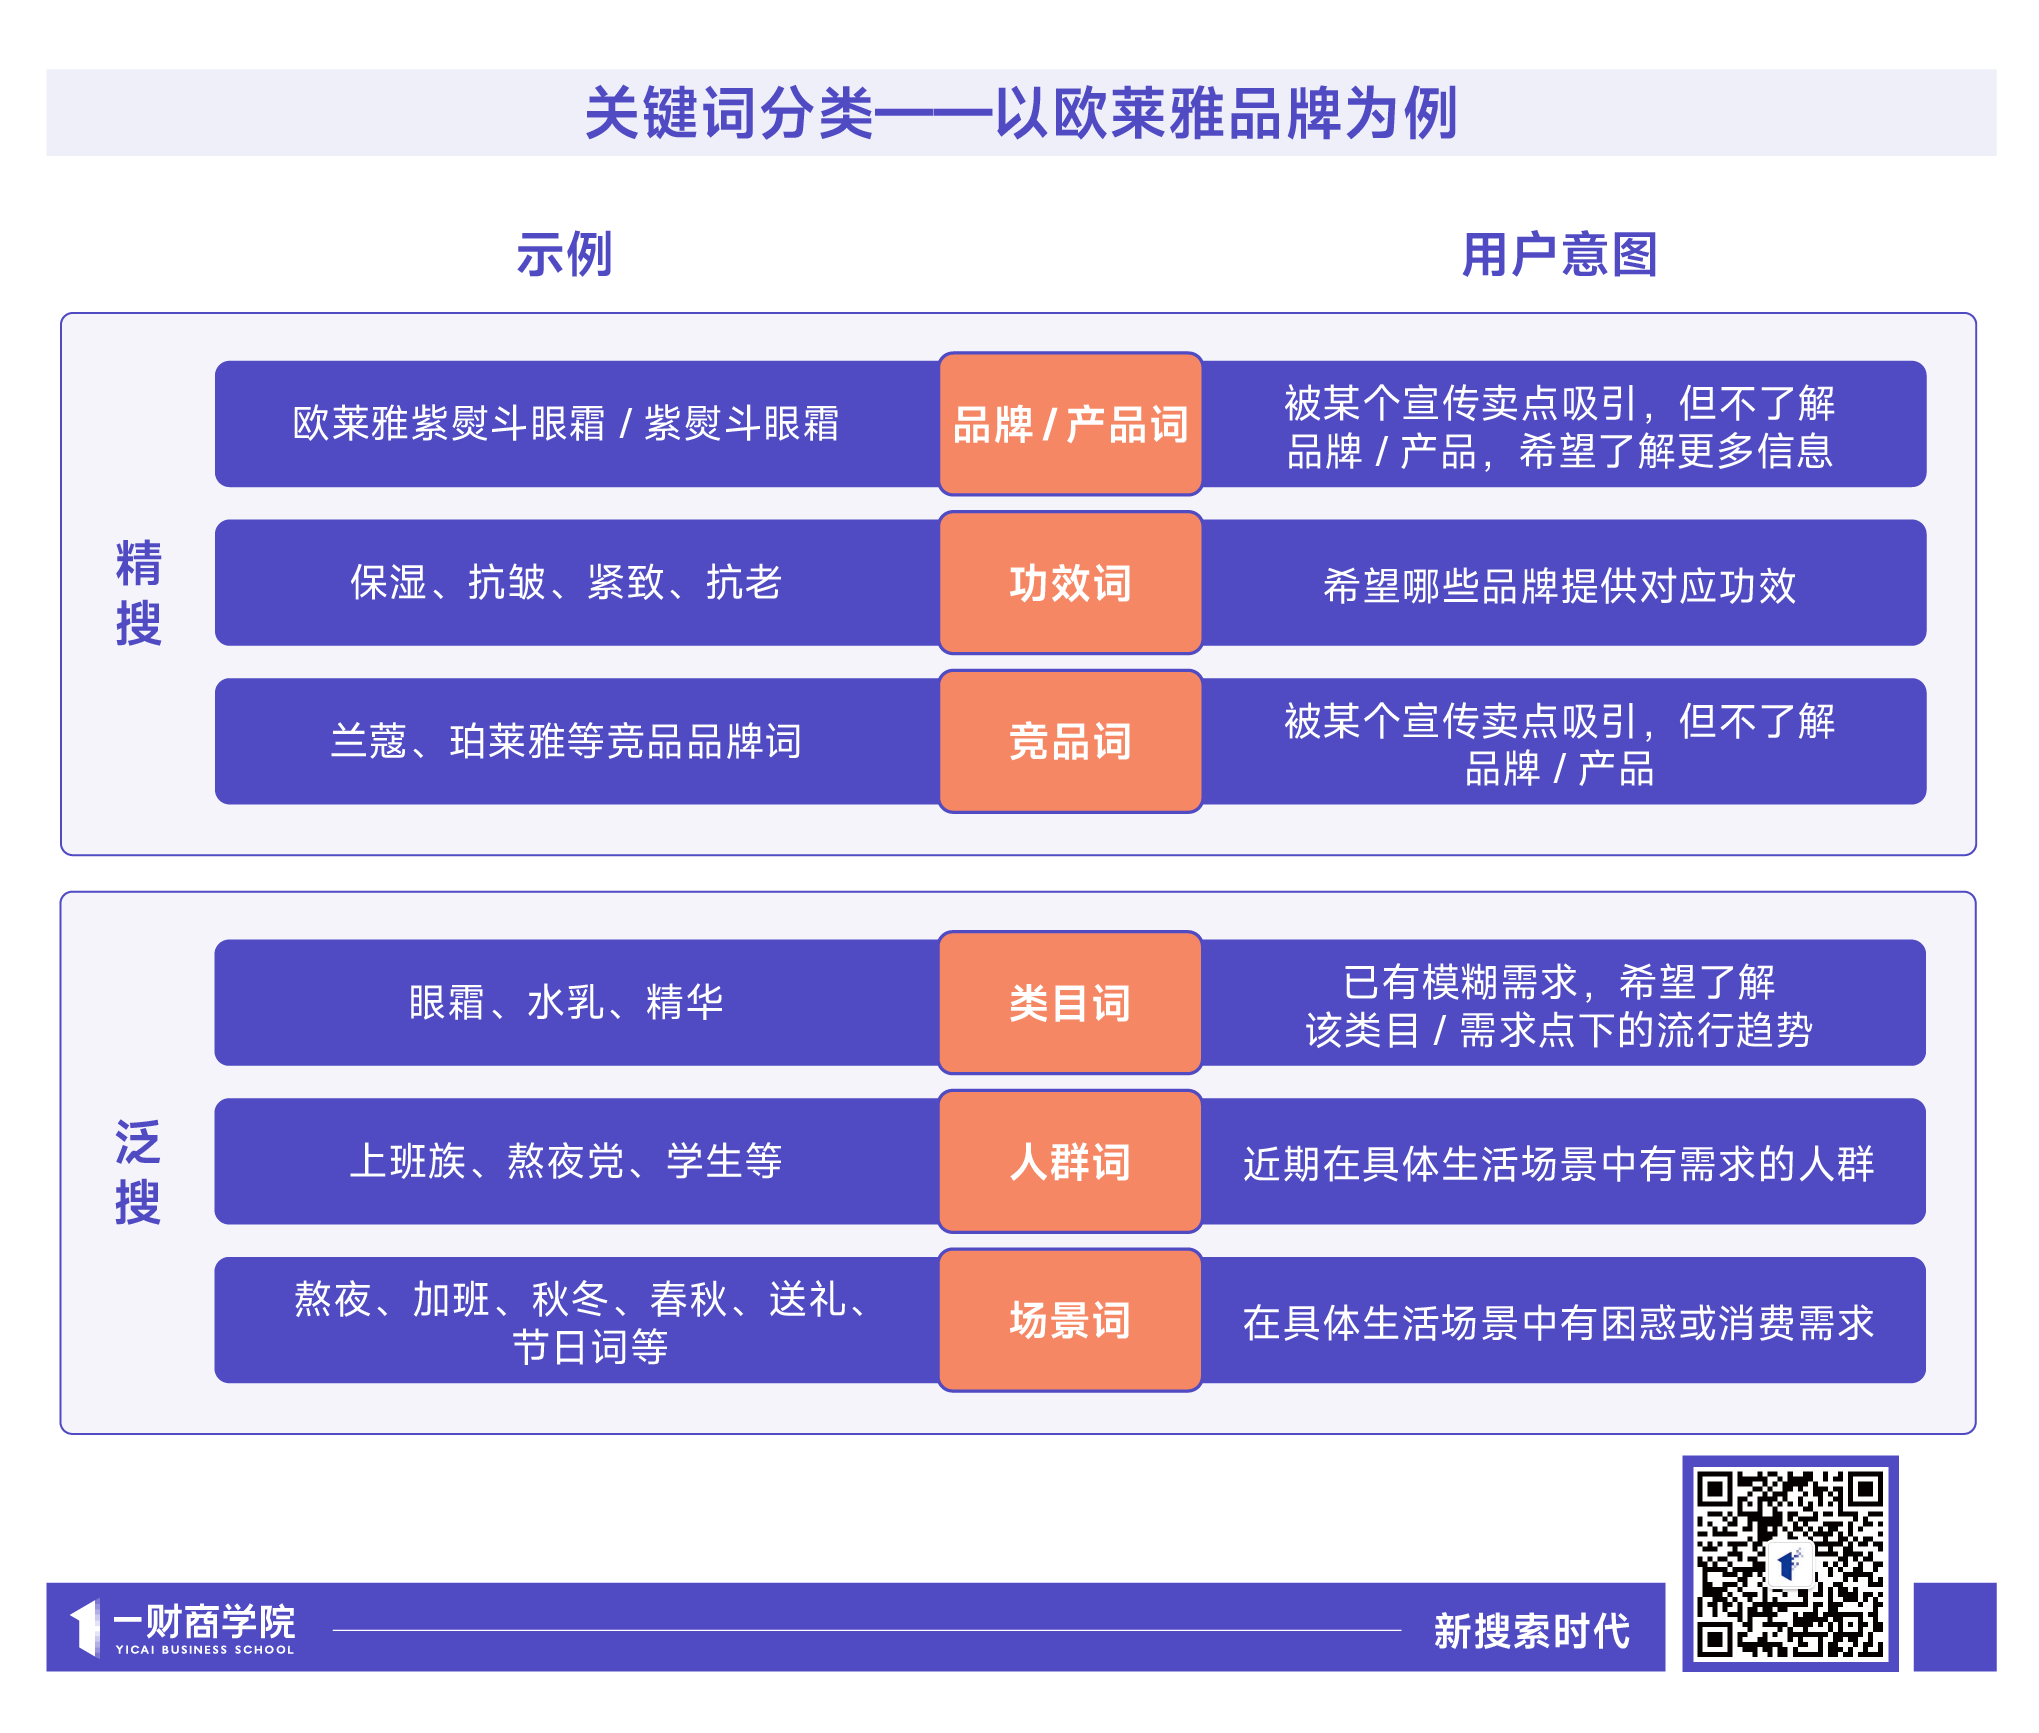 广州母婴购物指南：精准了解需求，合理选择品牌与价位